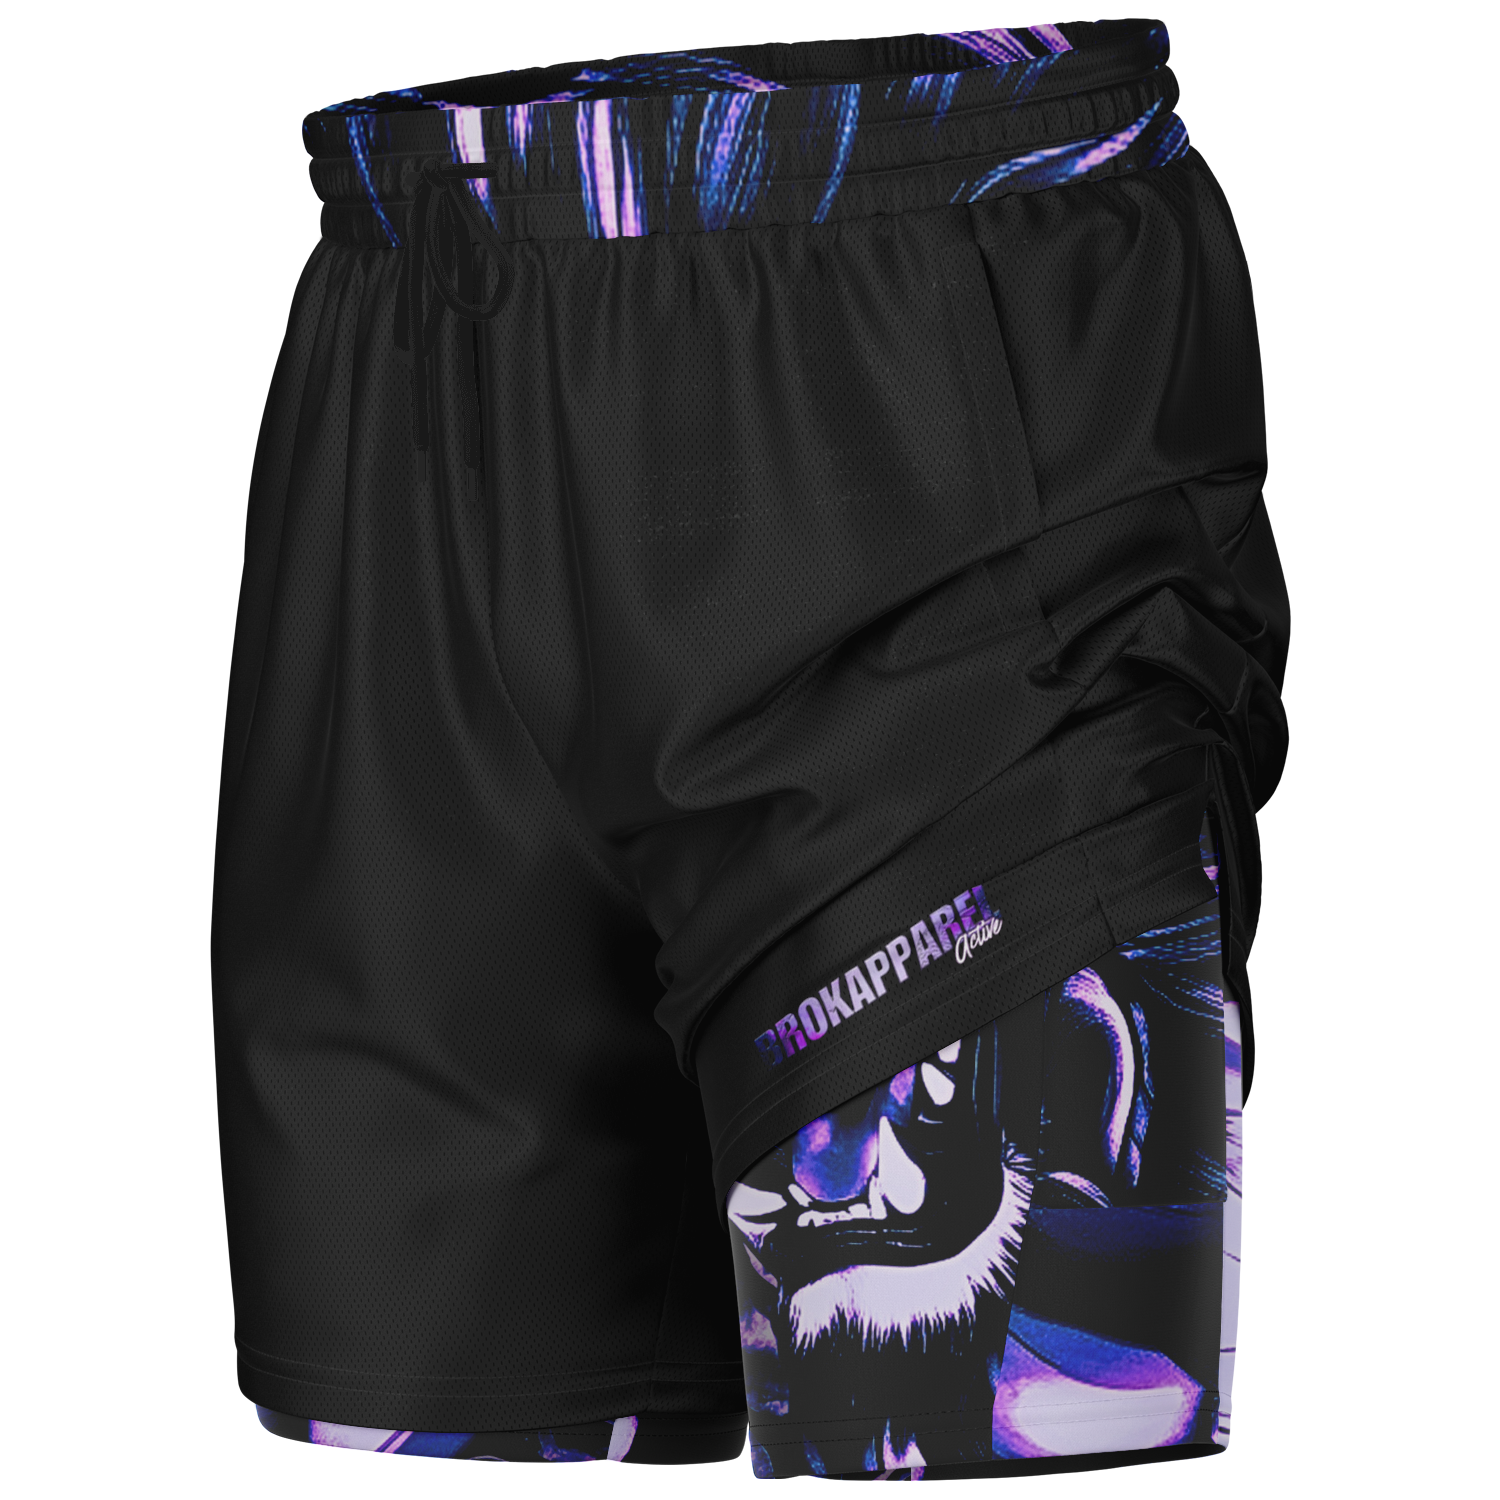 BEAST MODE -Brokapparel Black Haze Active Men's 2-in-1 Shorts